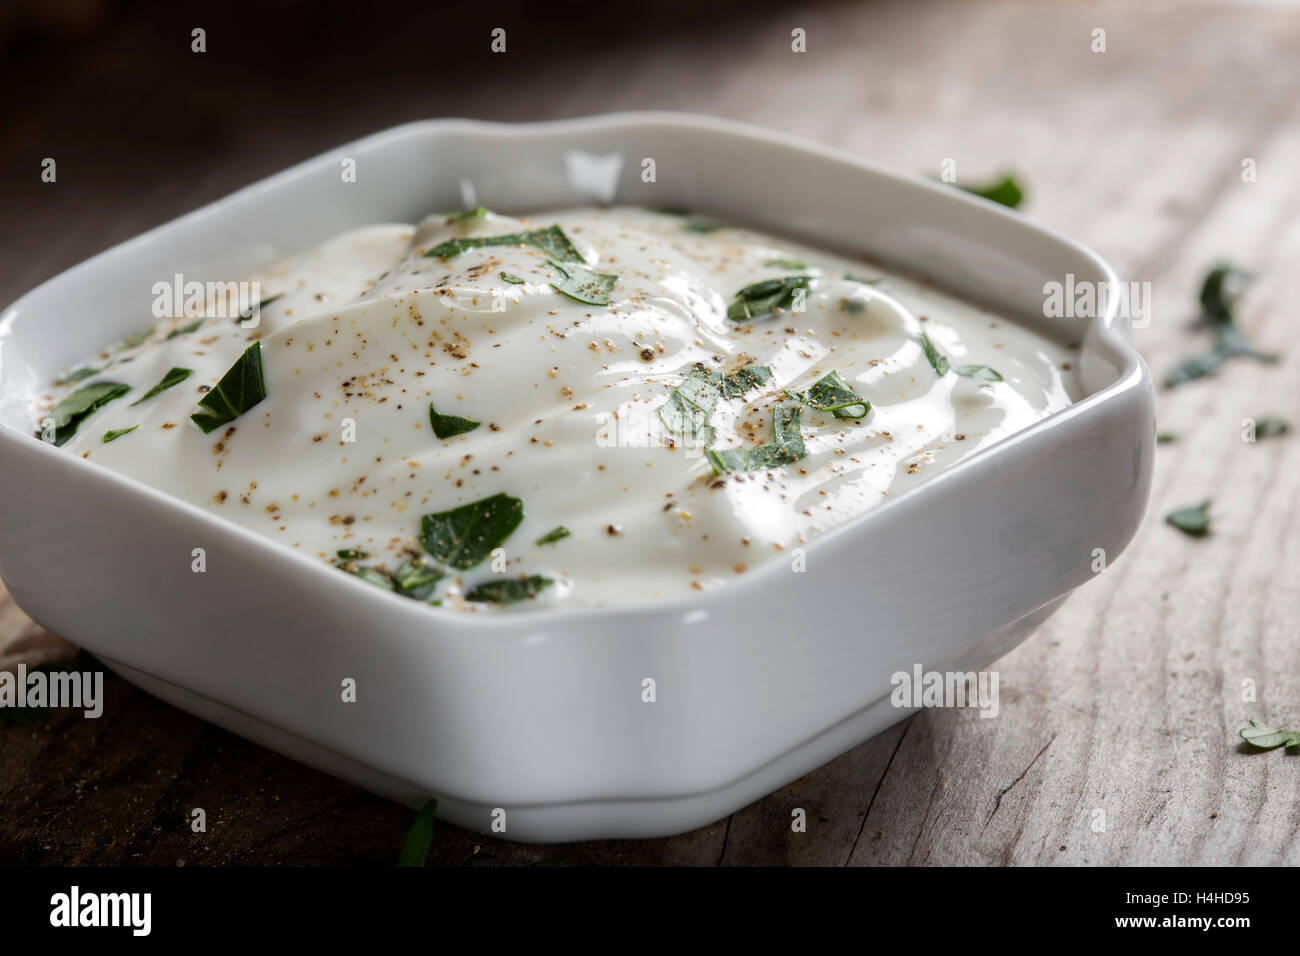 Saure Sahne oder Joghurt mit Kräutern und Pfeffer in weiße Schüssel auf hölzernen Hintergrund hautnah Stockfoto